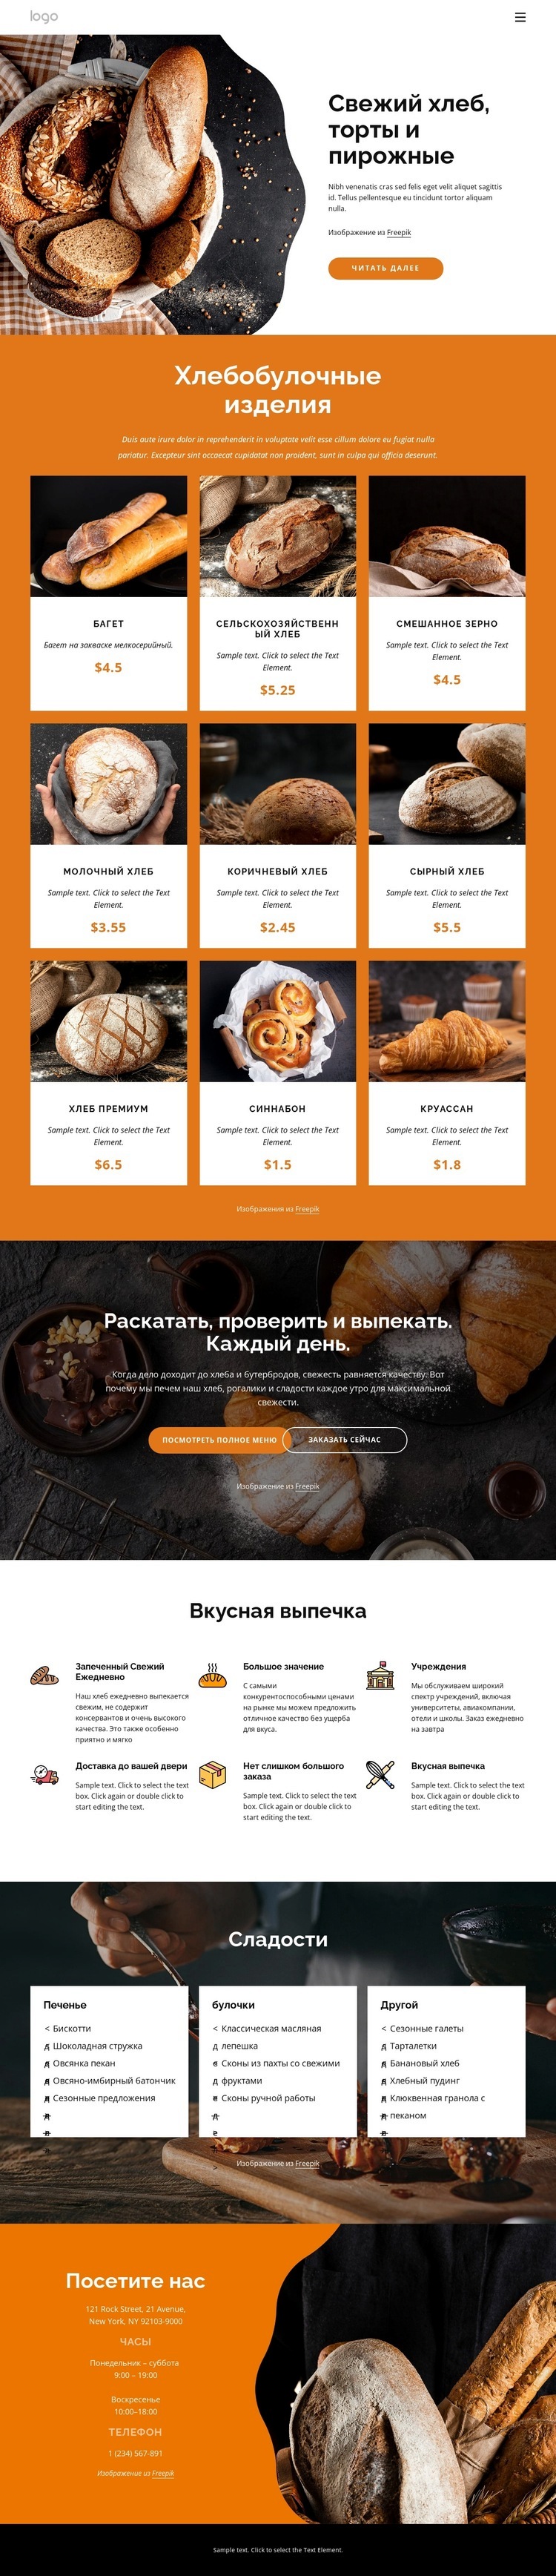 Свежий хлеб и пирожные Мокап веб-сайта